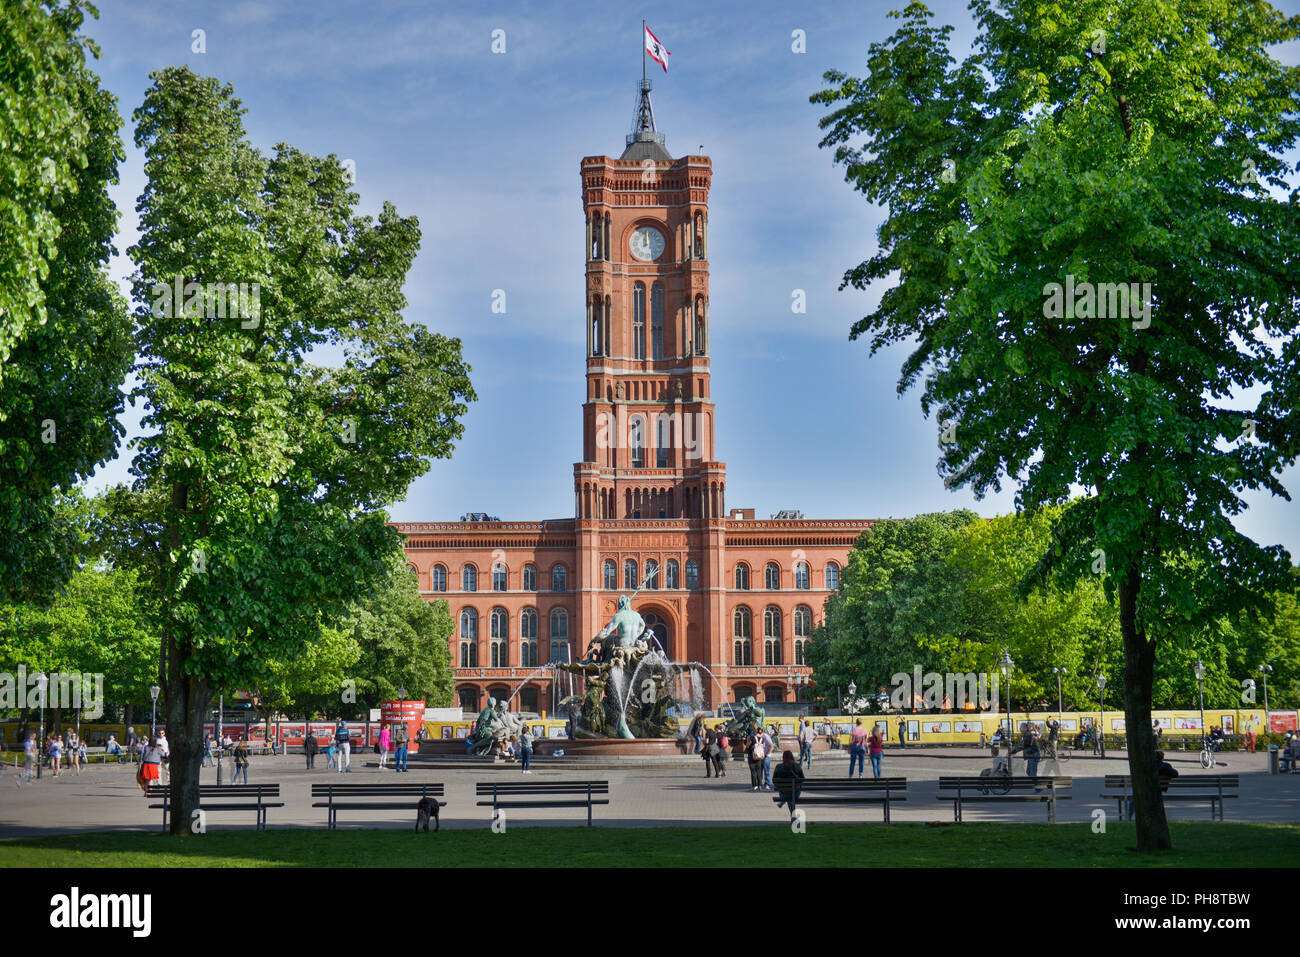 Neptunbrunnen, Rotes Rathaus, Rathaustrasse, Mitte, Berlin, Deutschland Stock Photo